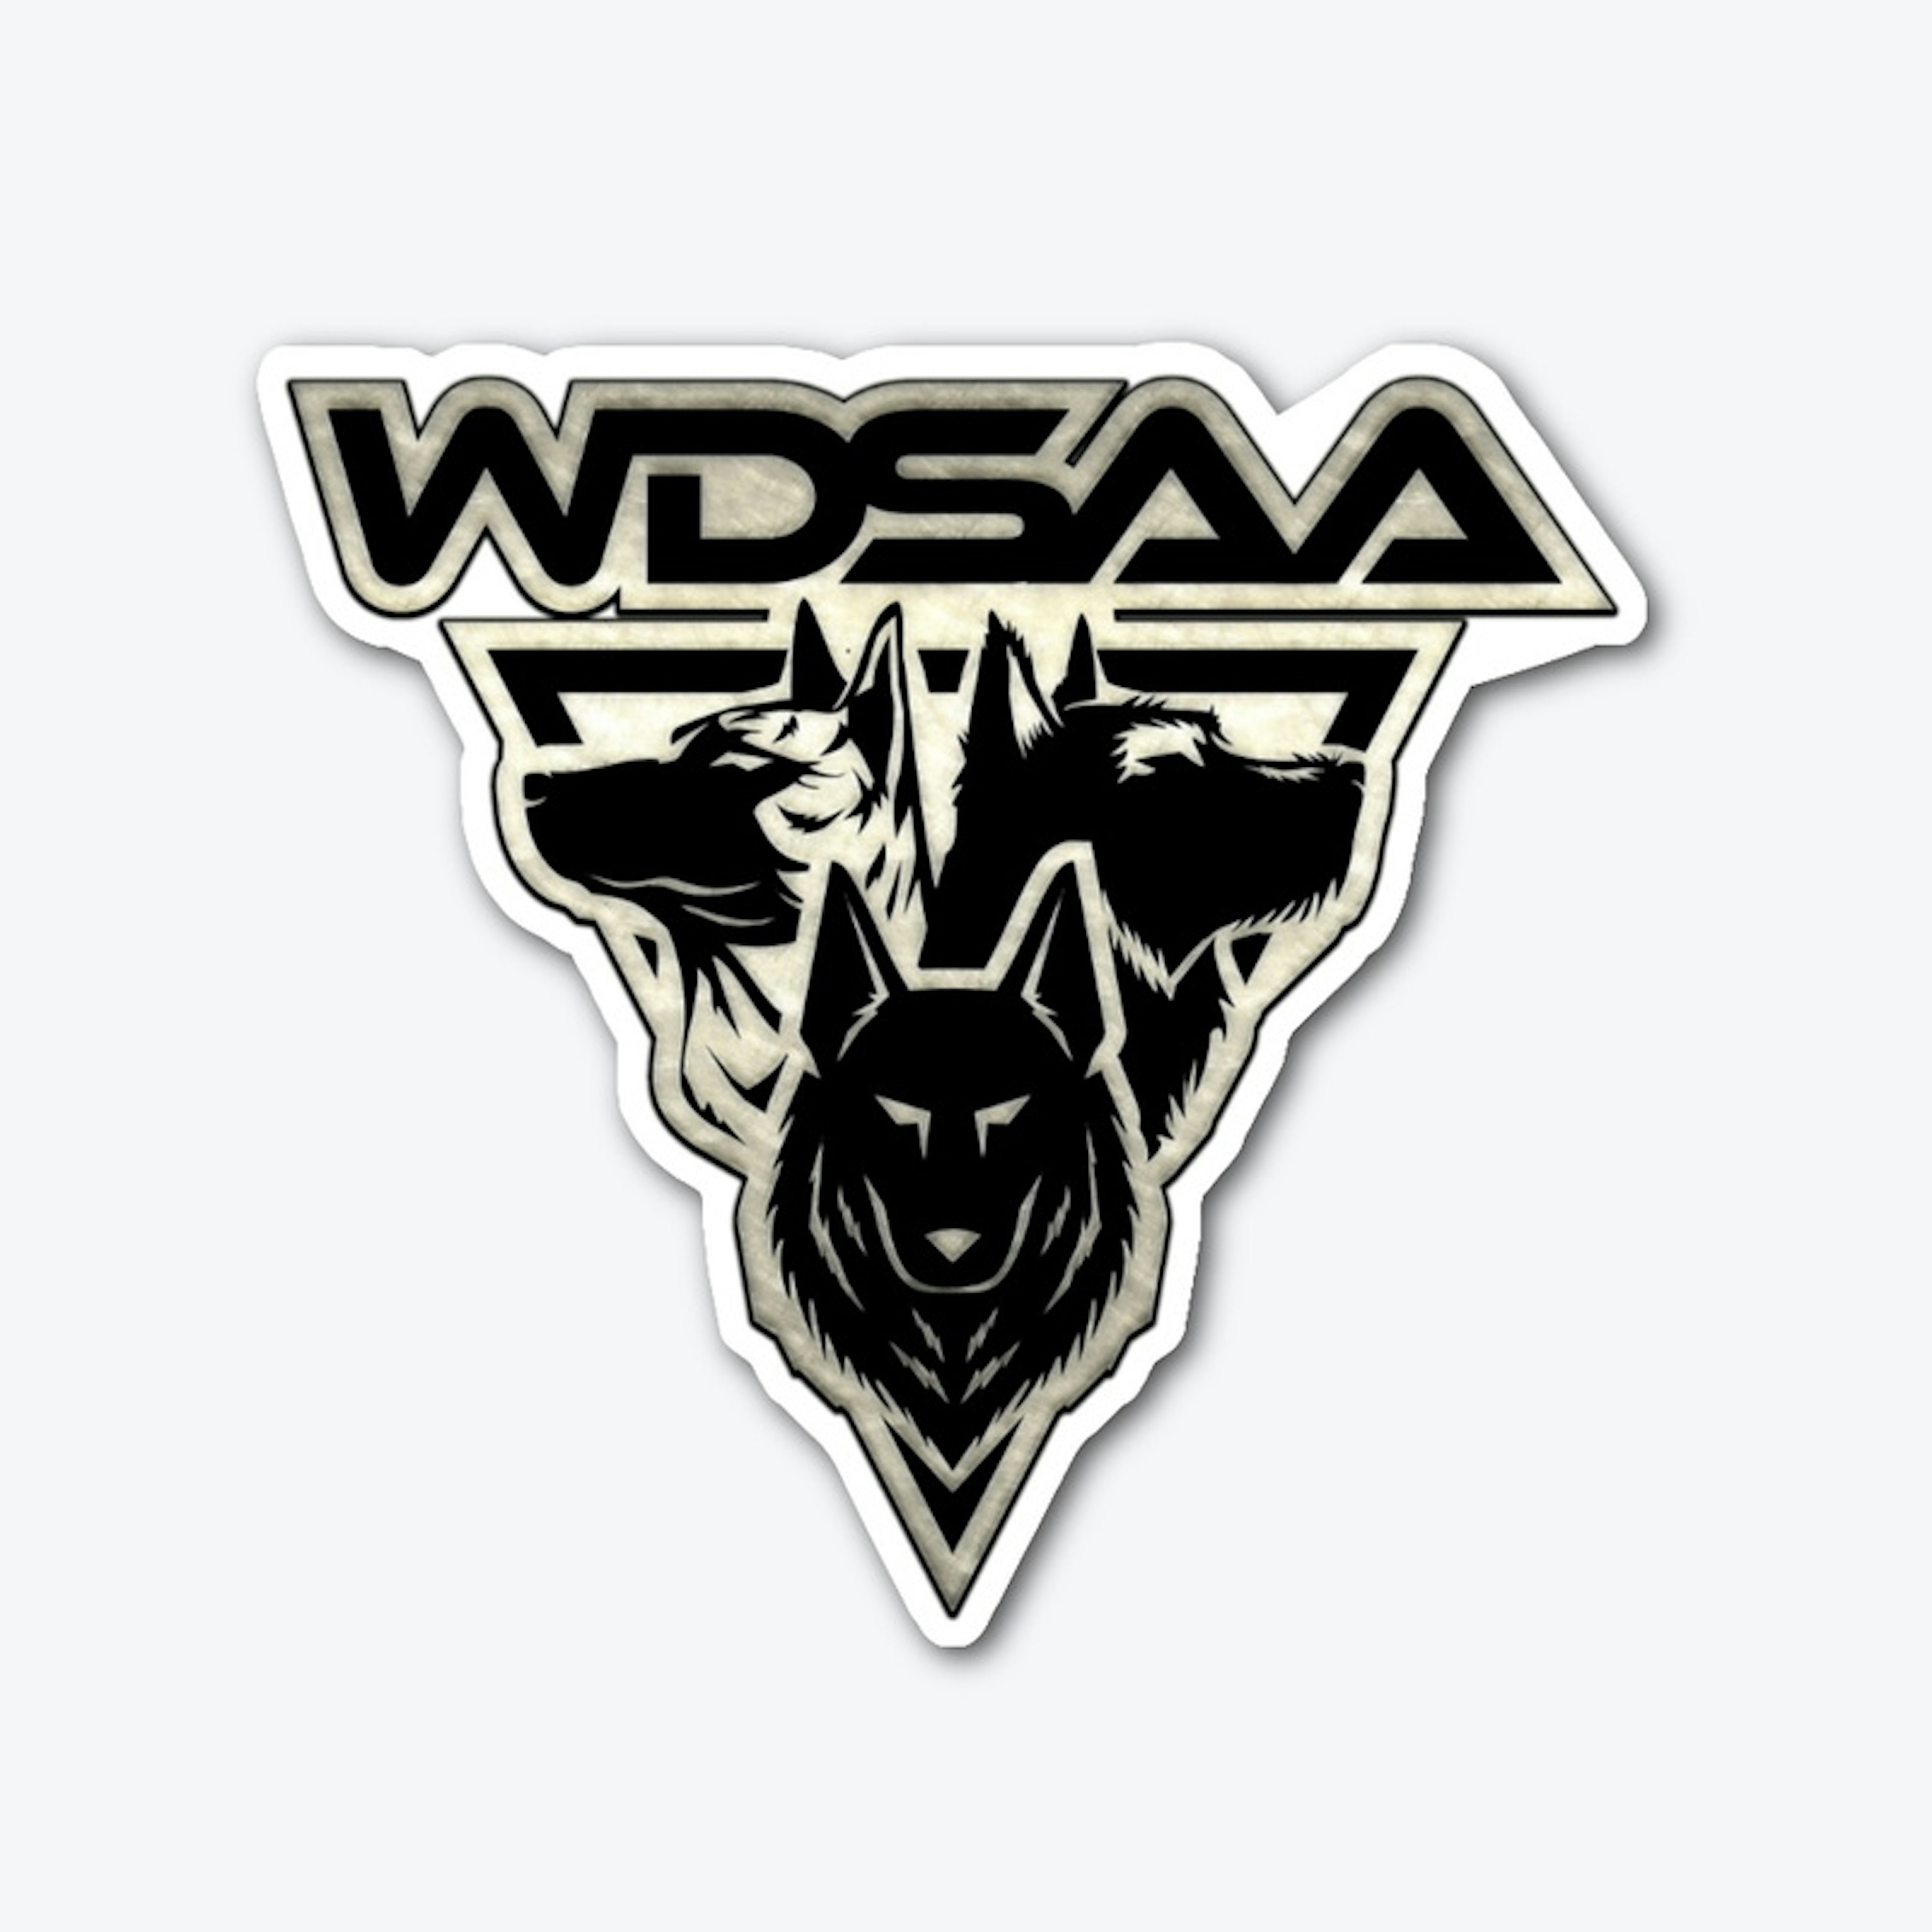 WDSAA Metal Texture